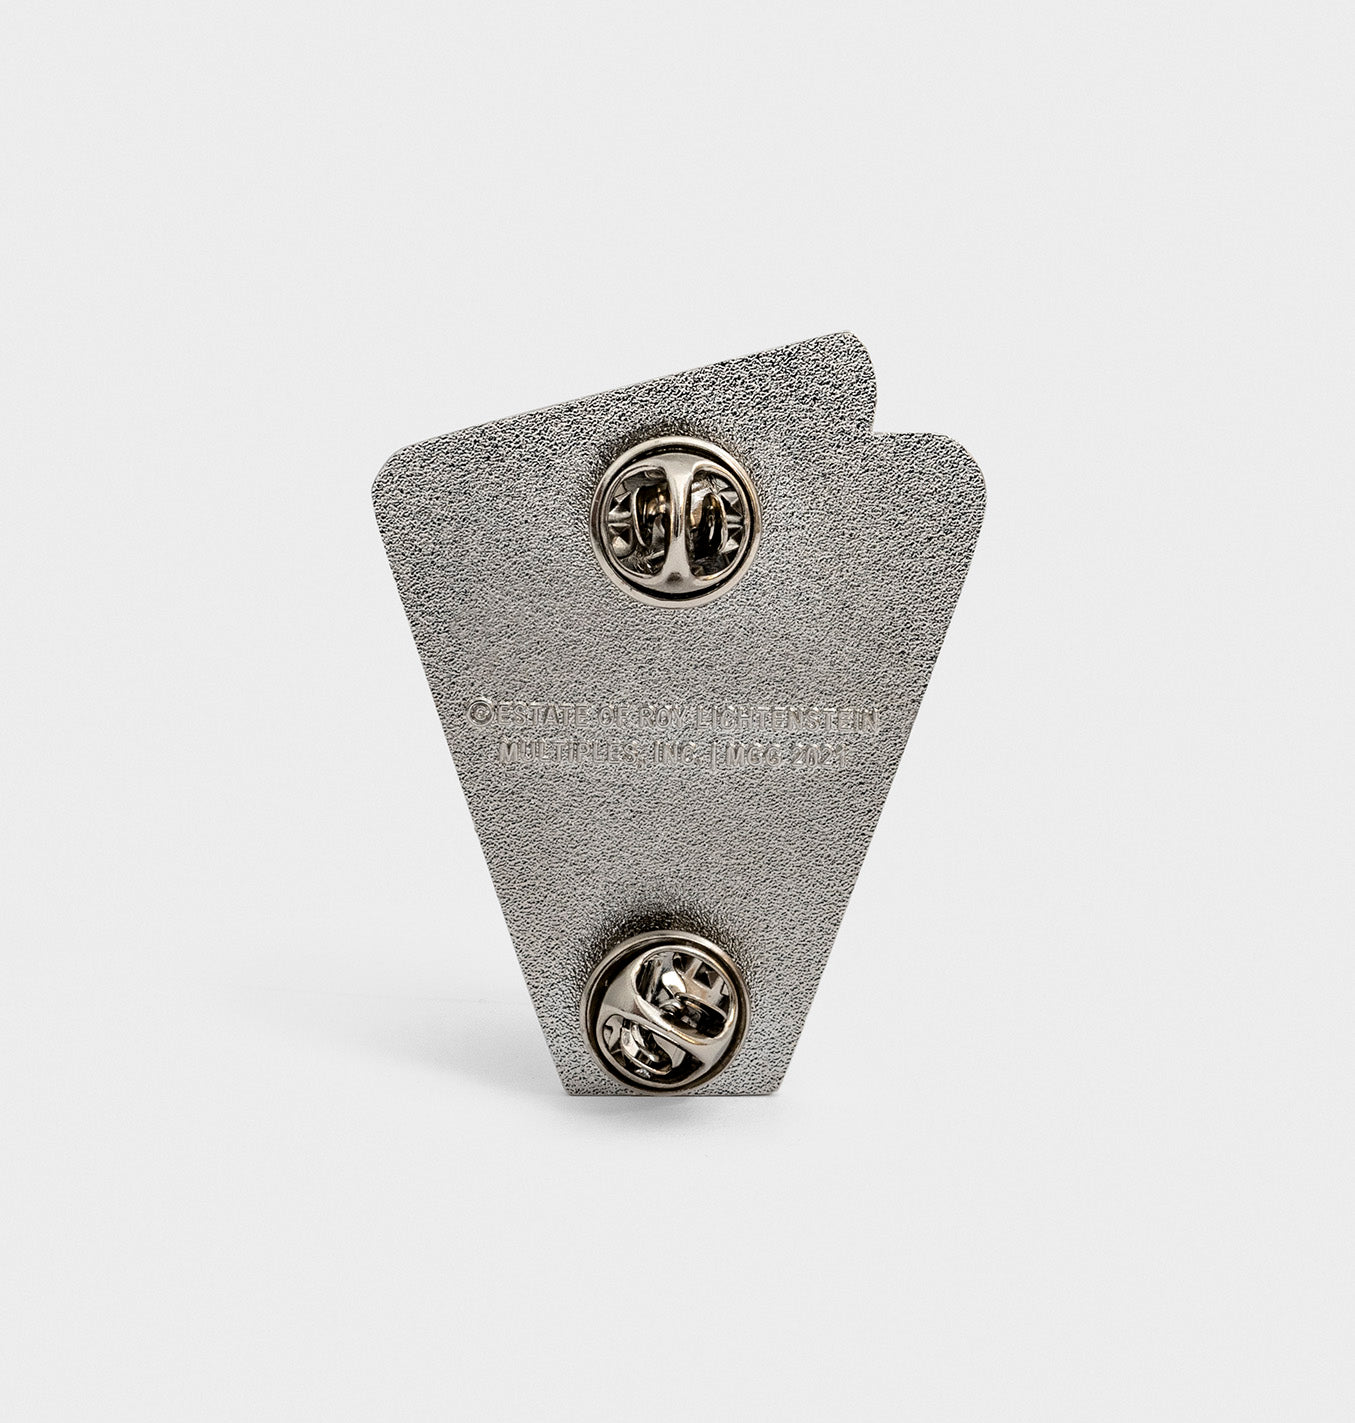 Roy Lichtenstein: Small Modern Head Pin